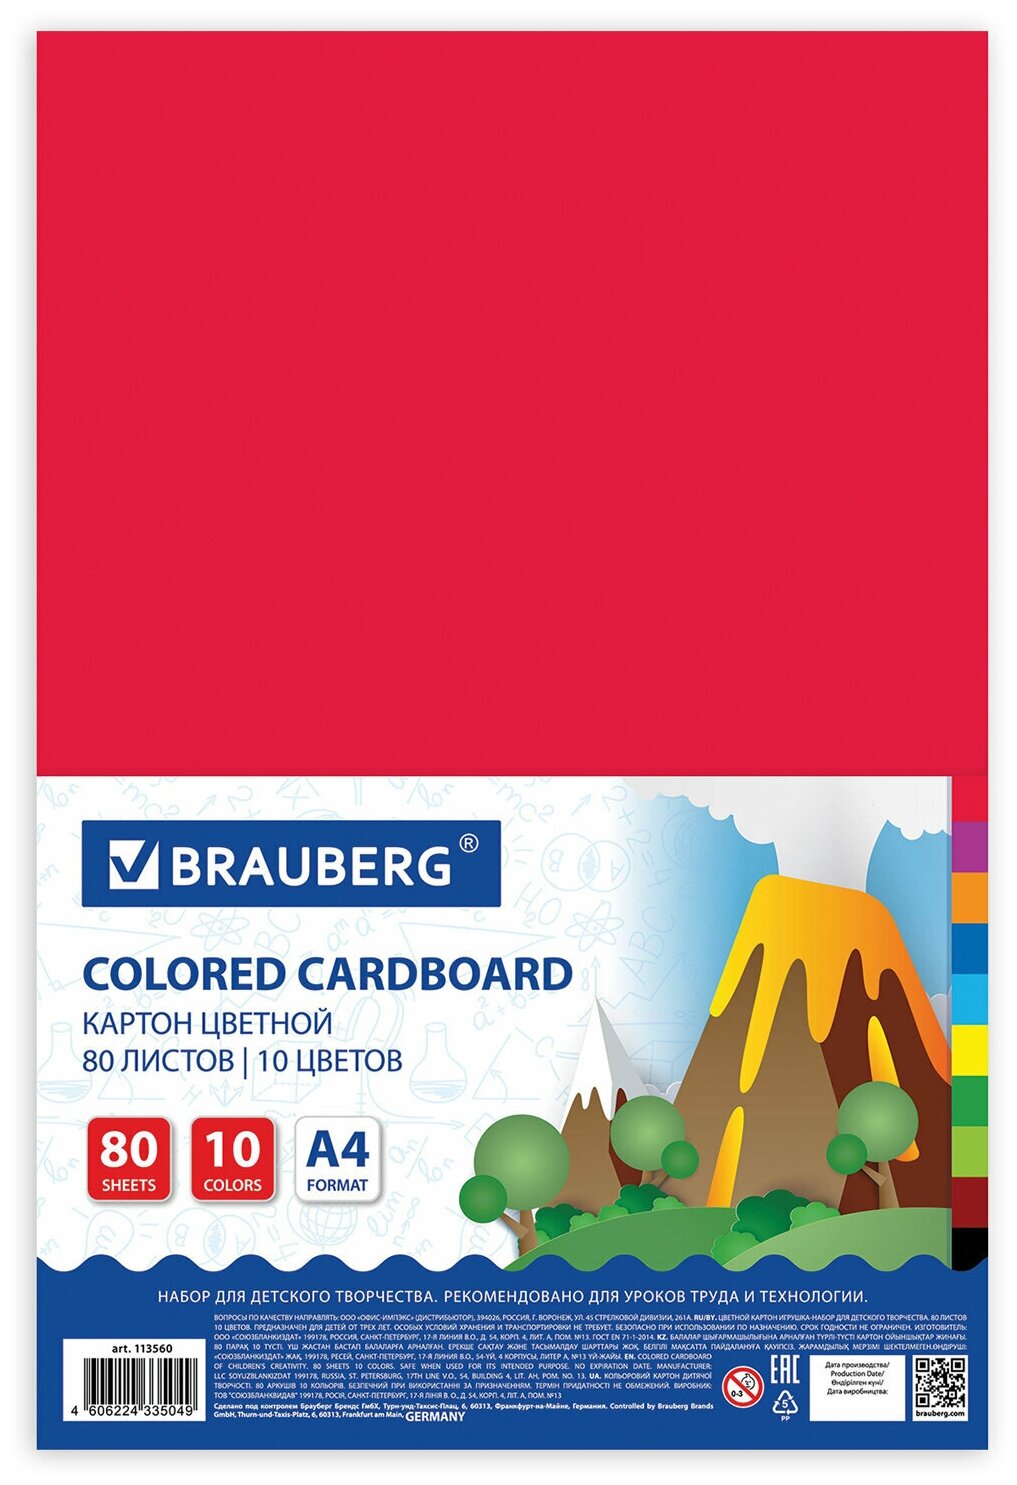 Картон цветной формата А4 для творчества немелованный, 80 листов, 10 цветов, в пленке, Brauberg, 200х290 мм, 113560